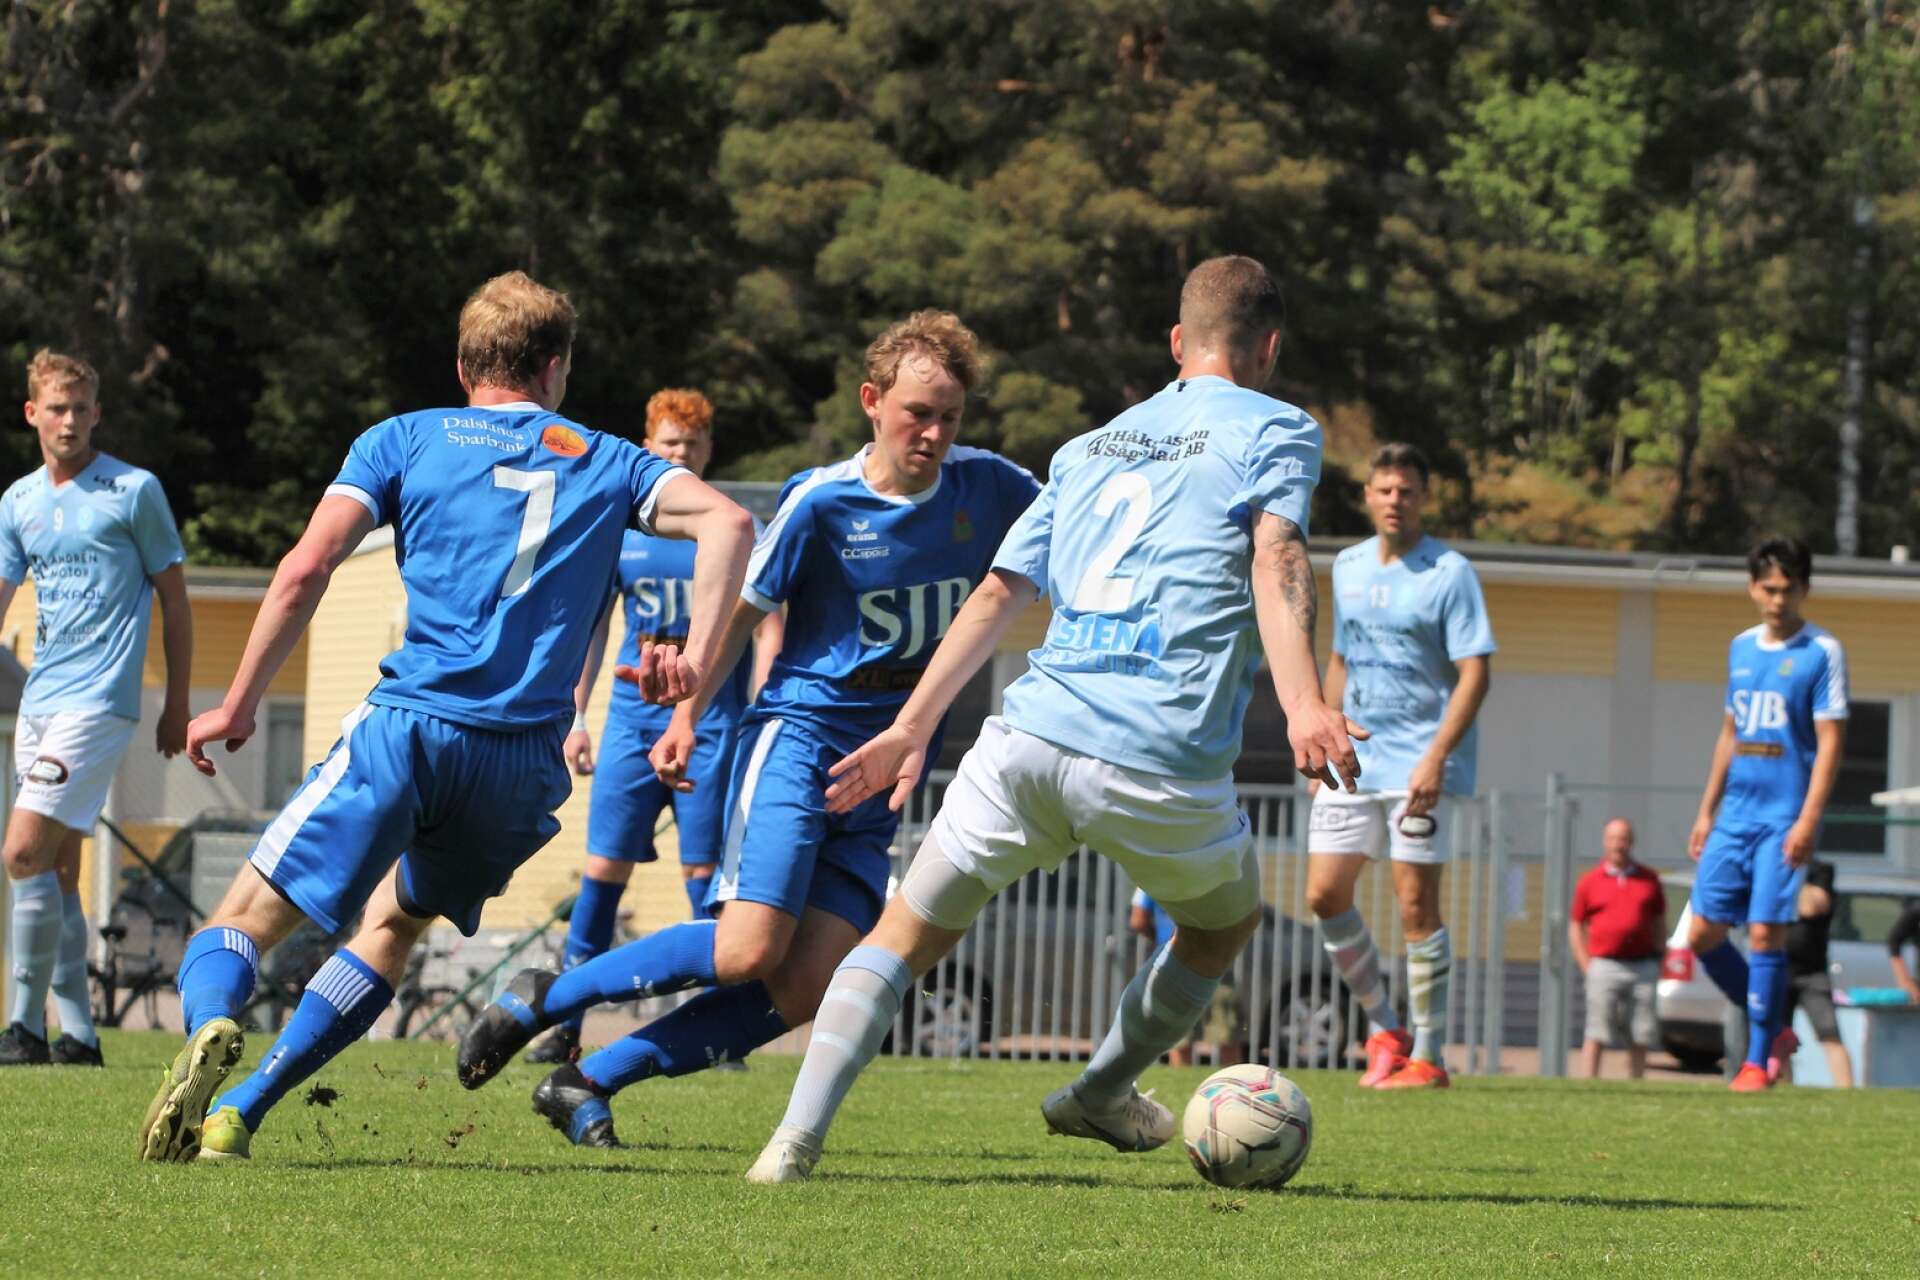 Martin Eriksson med bollen i duell med Theo Johannesson och till vänster Victor Remneland.

Fotboll på Rösvallen, Åmål
Division 4 Bohuslän–Dalsland
IF Viken – Eds FF 0–2 (0–1)